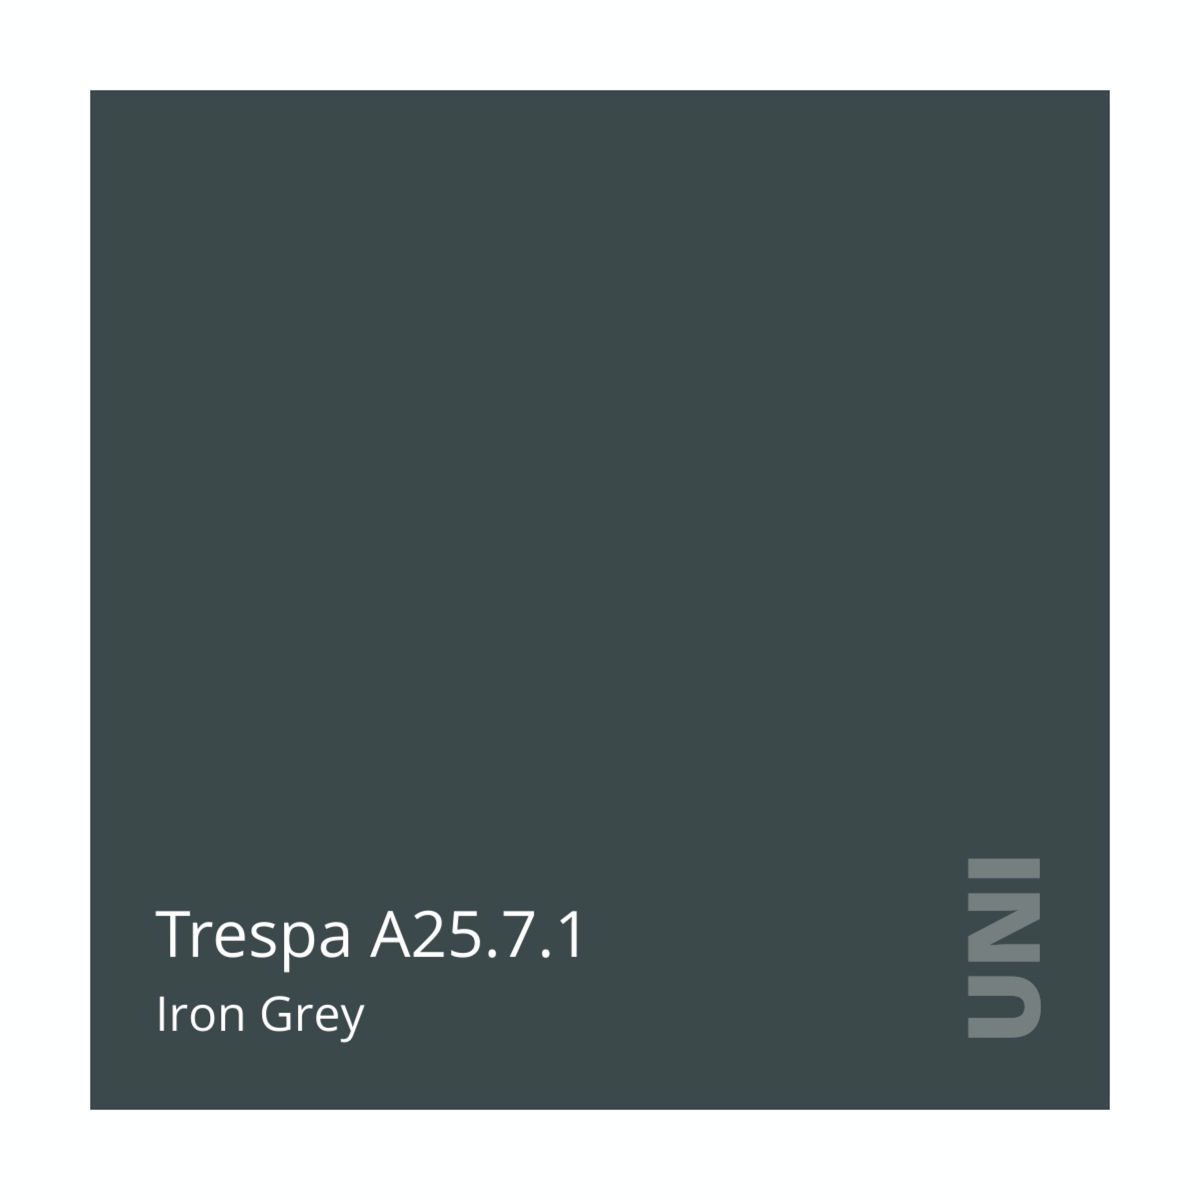 Trespa A25.7.1 Iron Grey